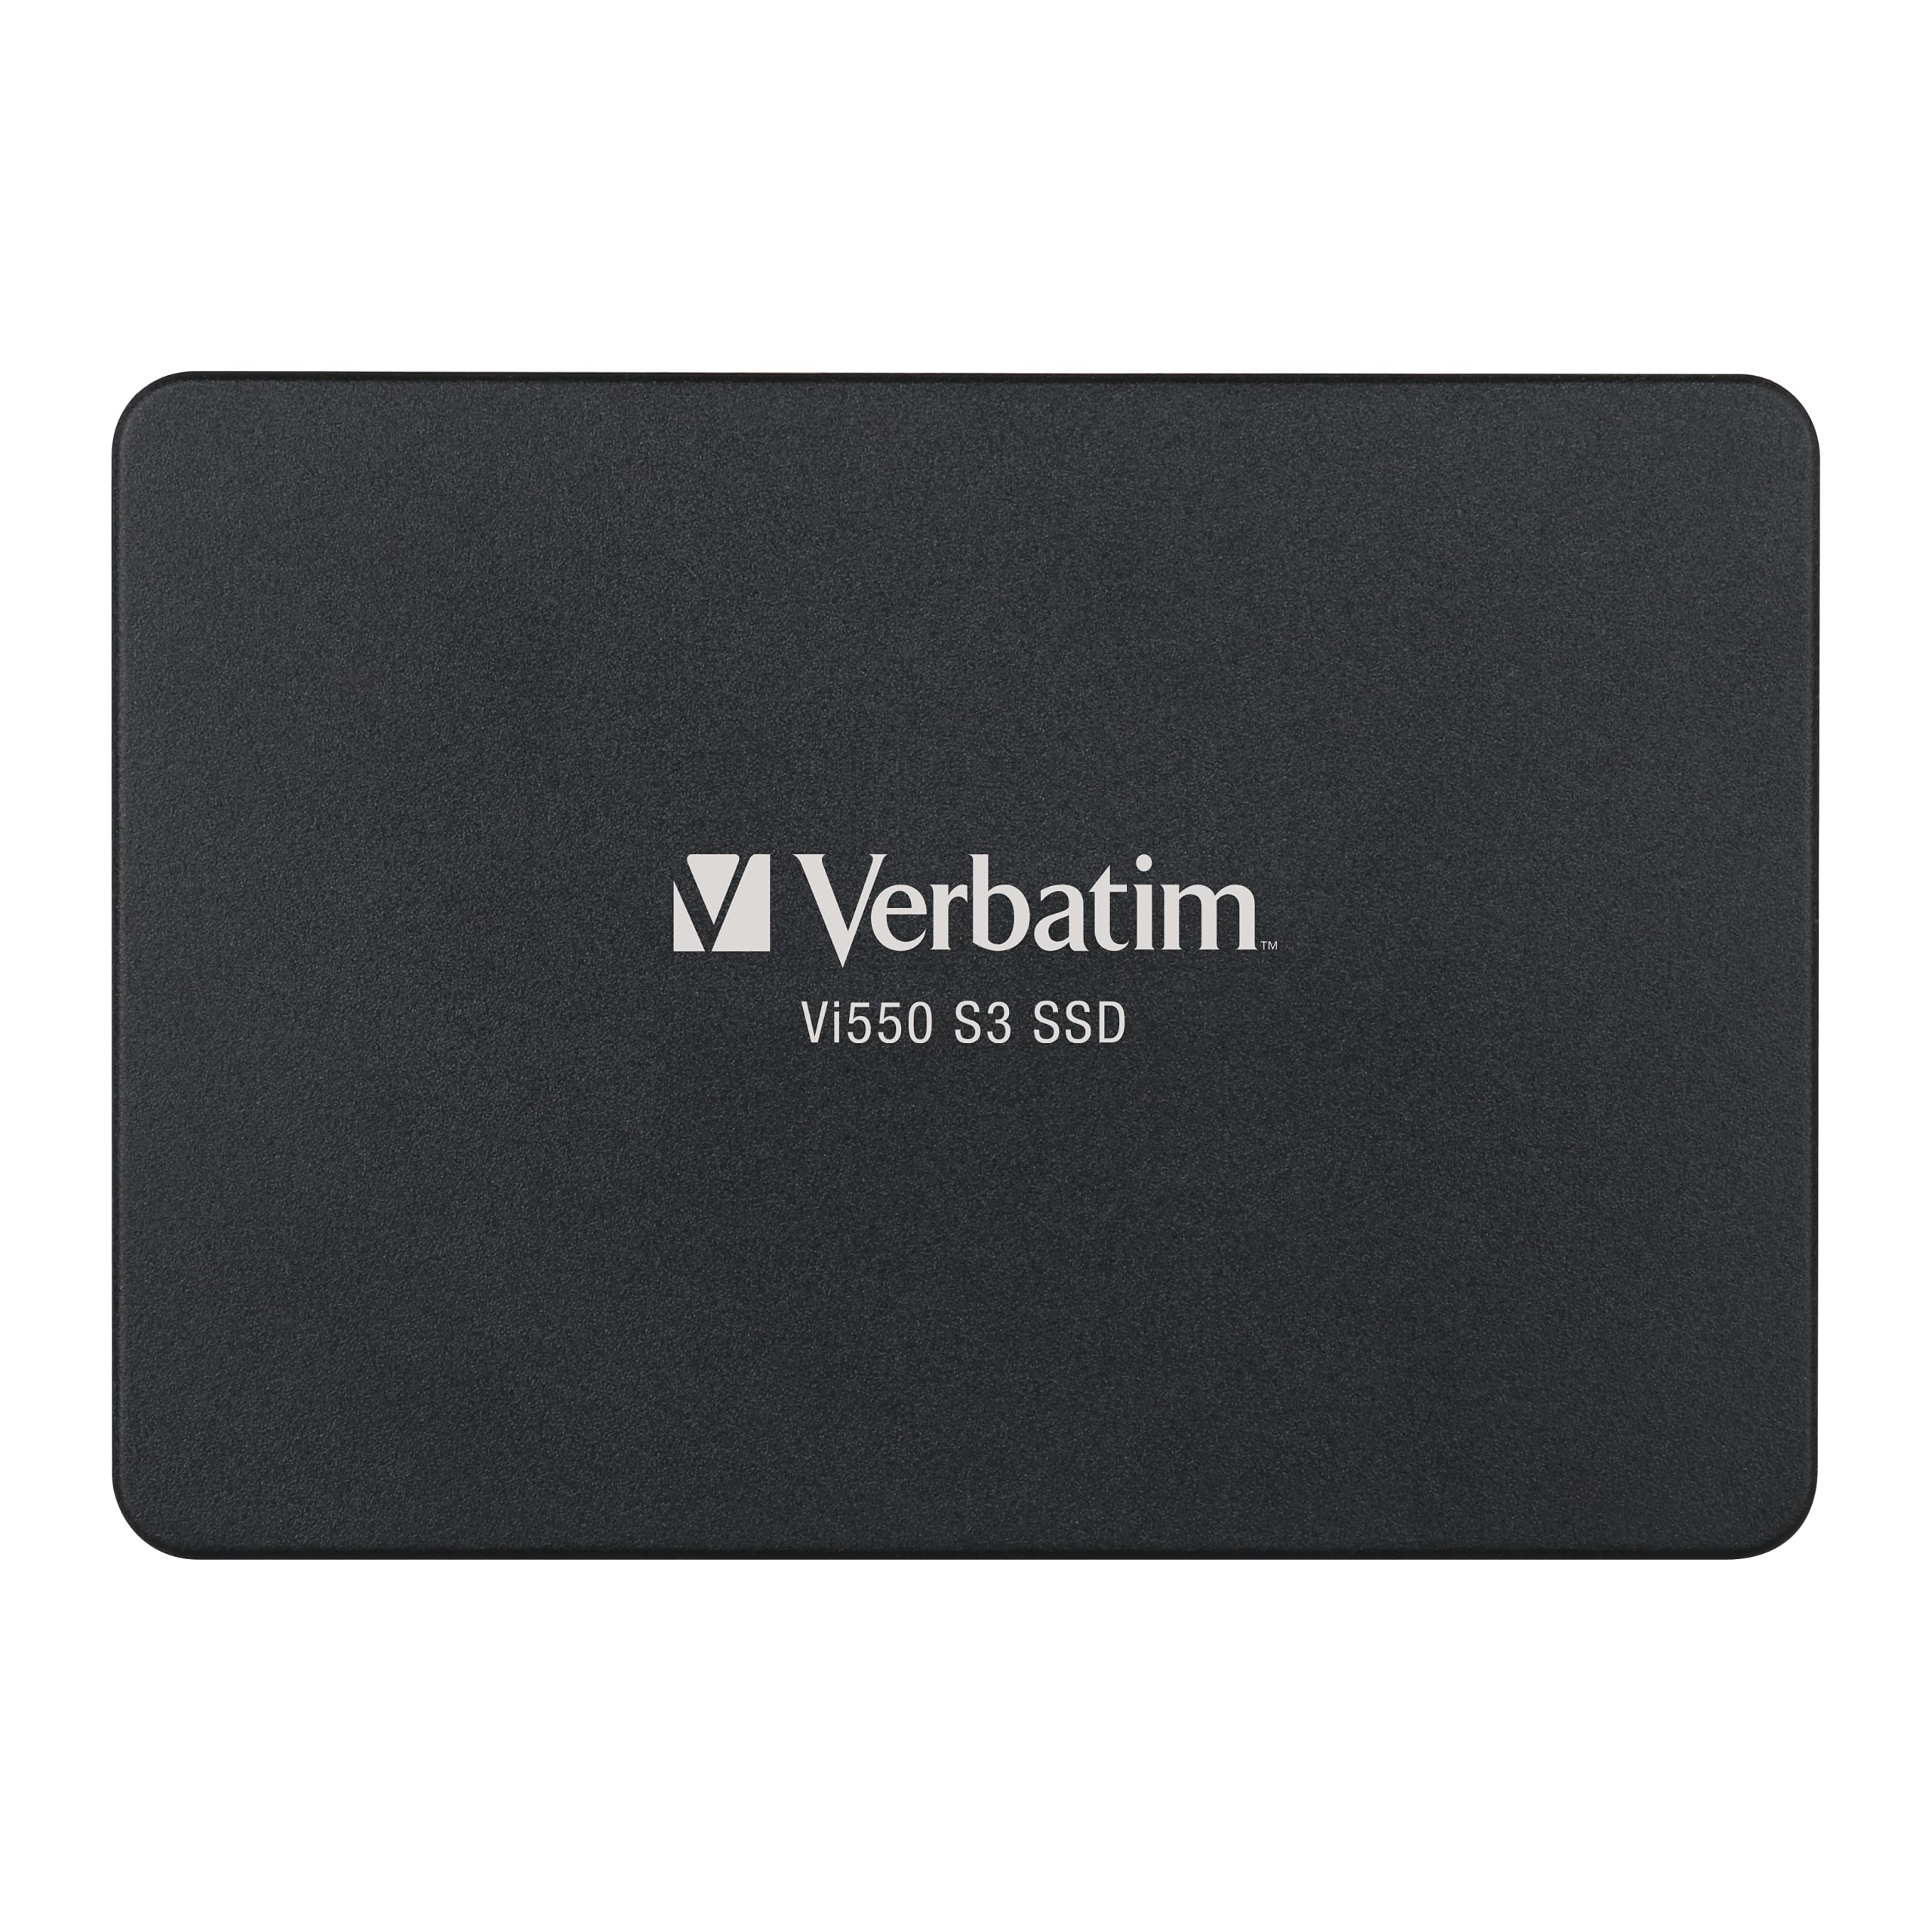 Verbatim 128GB Vi550 SATA III 2.5 Internal SSD